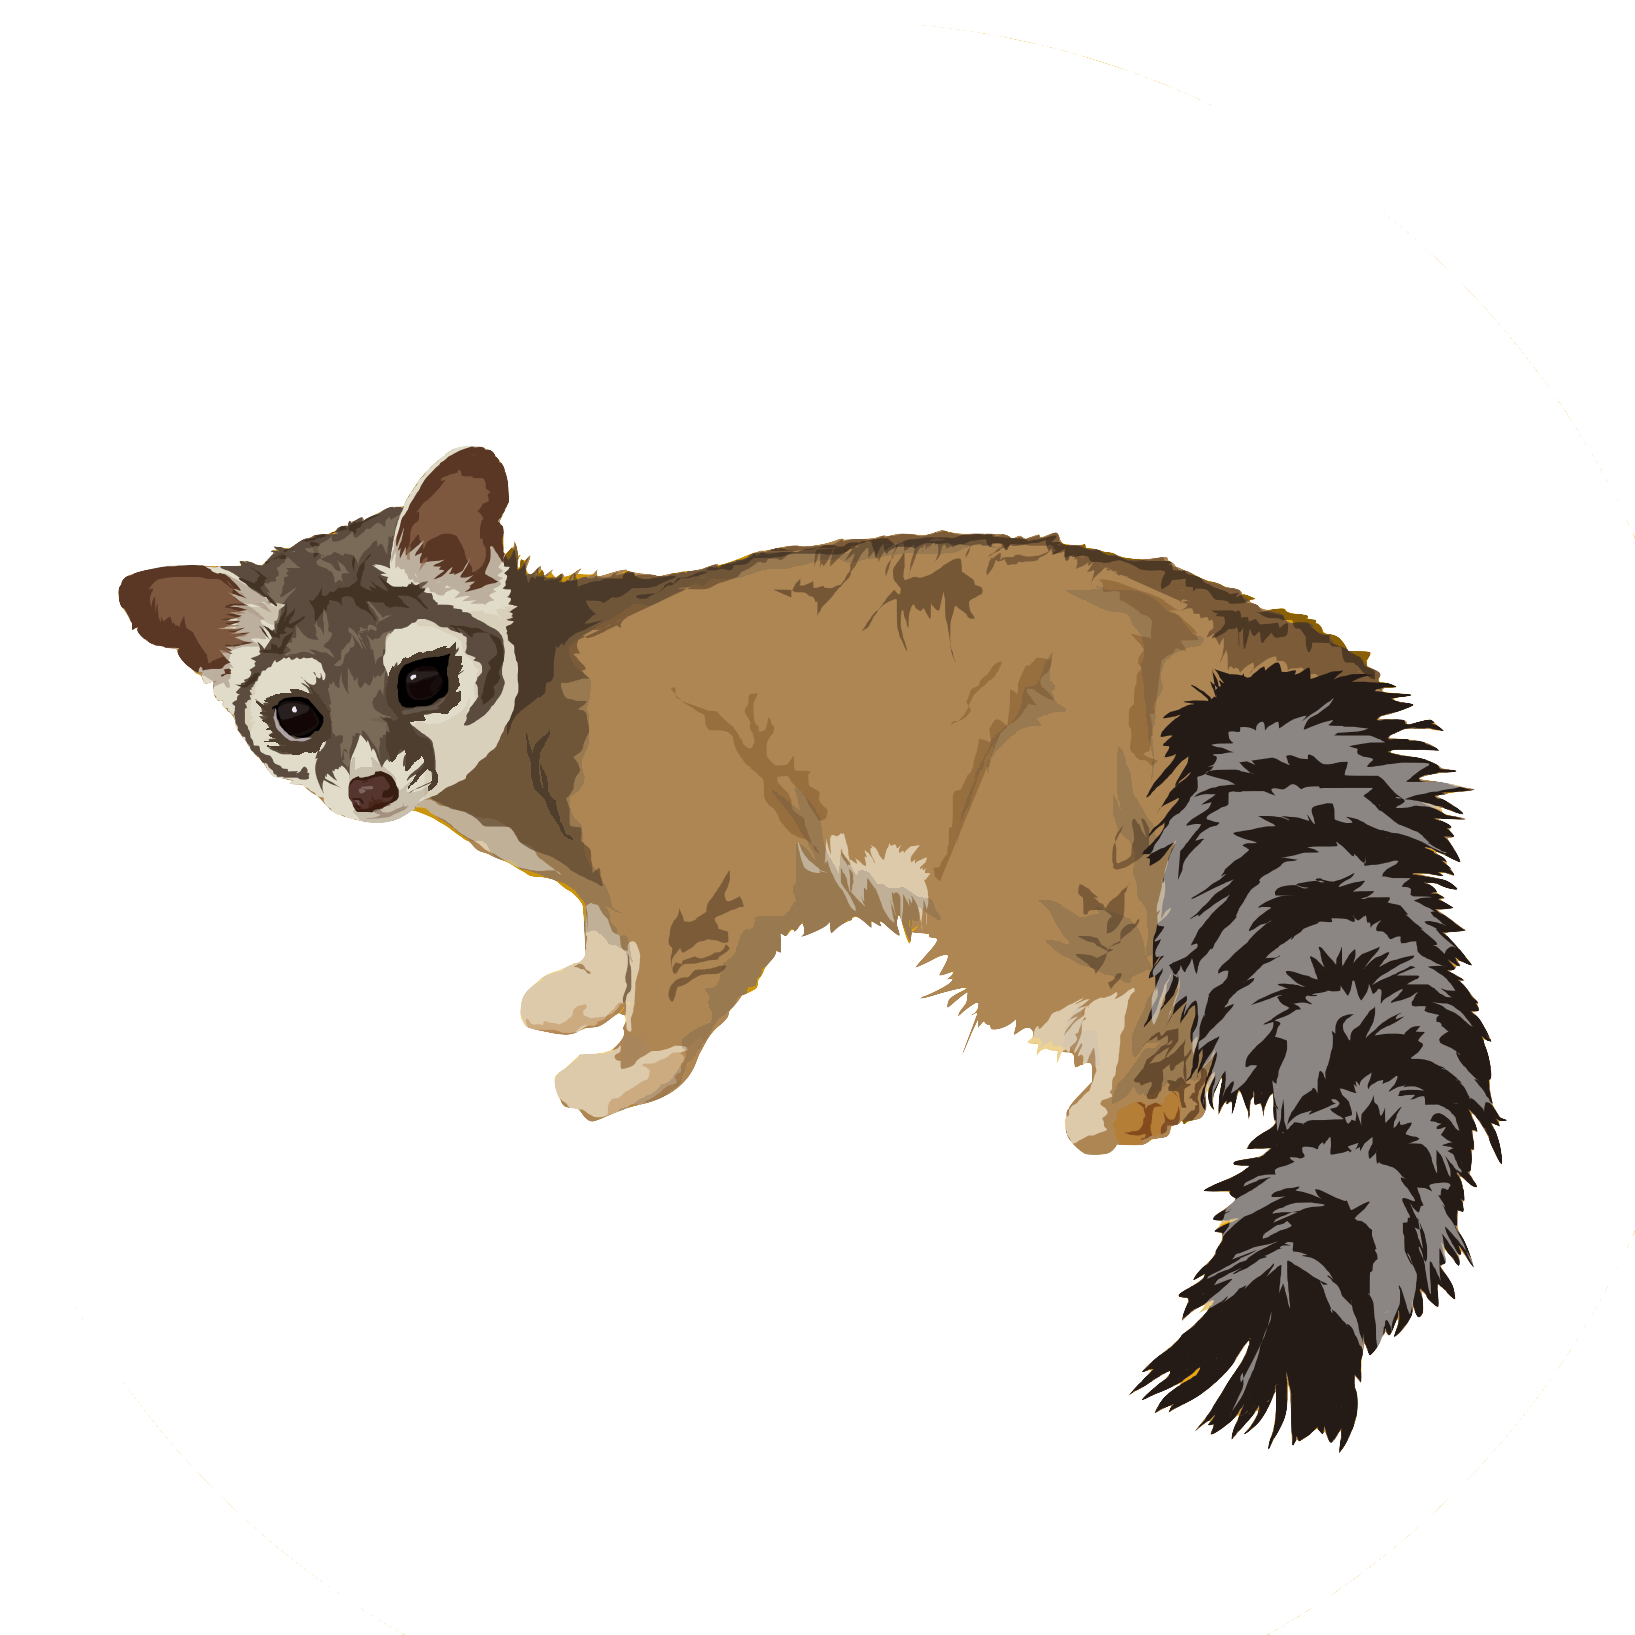 Ring tailed cat or Bassariscus